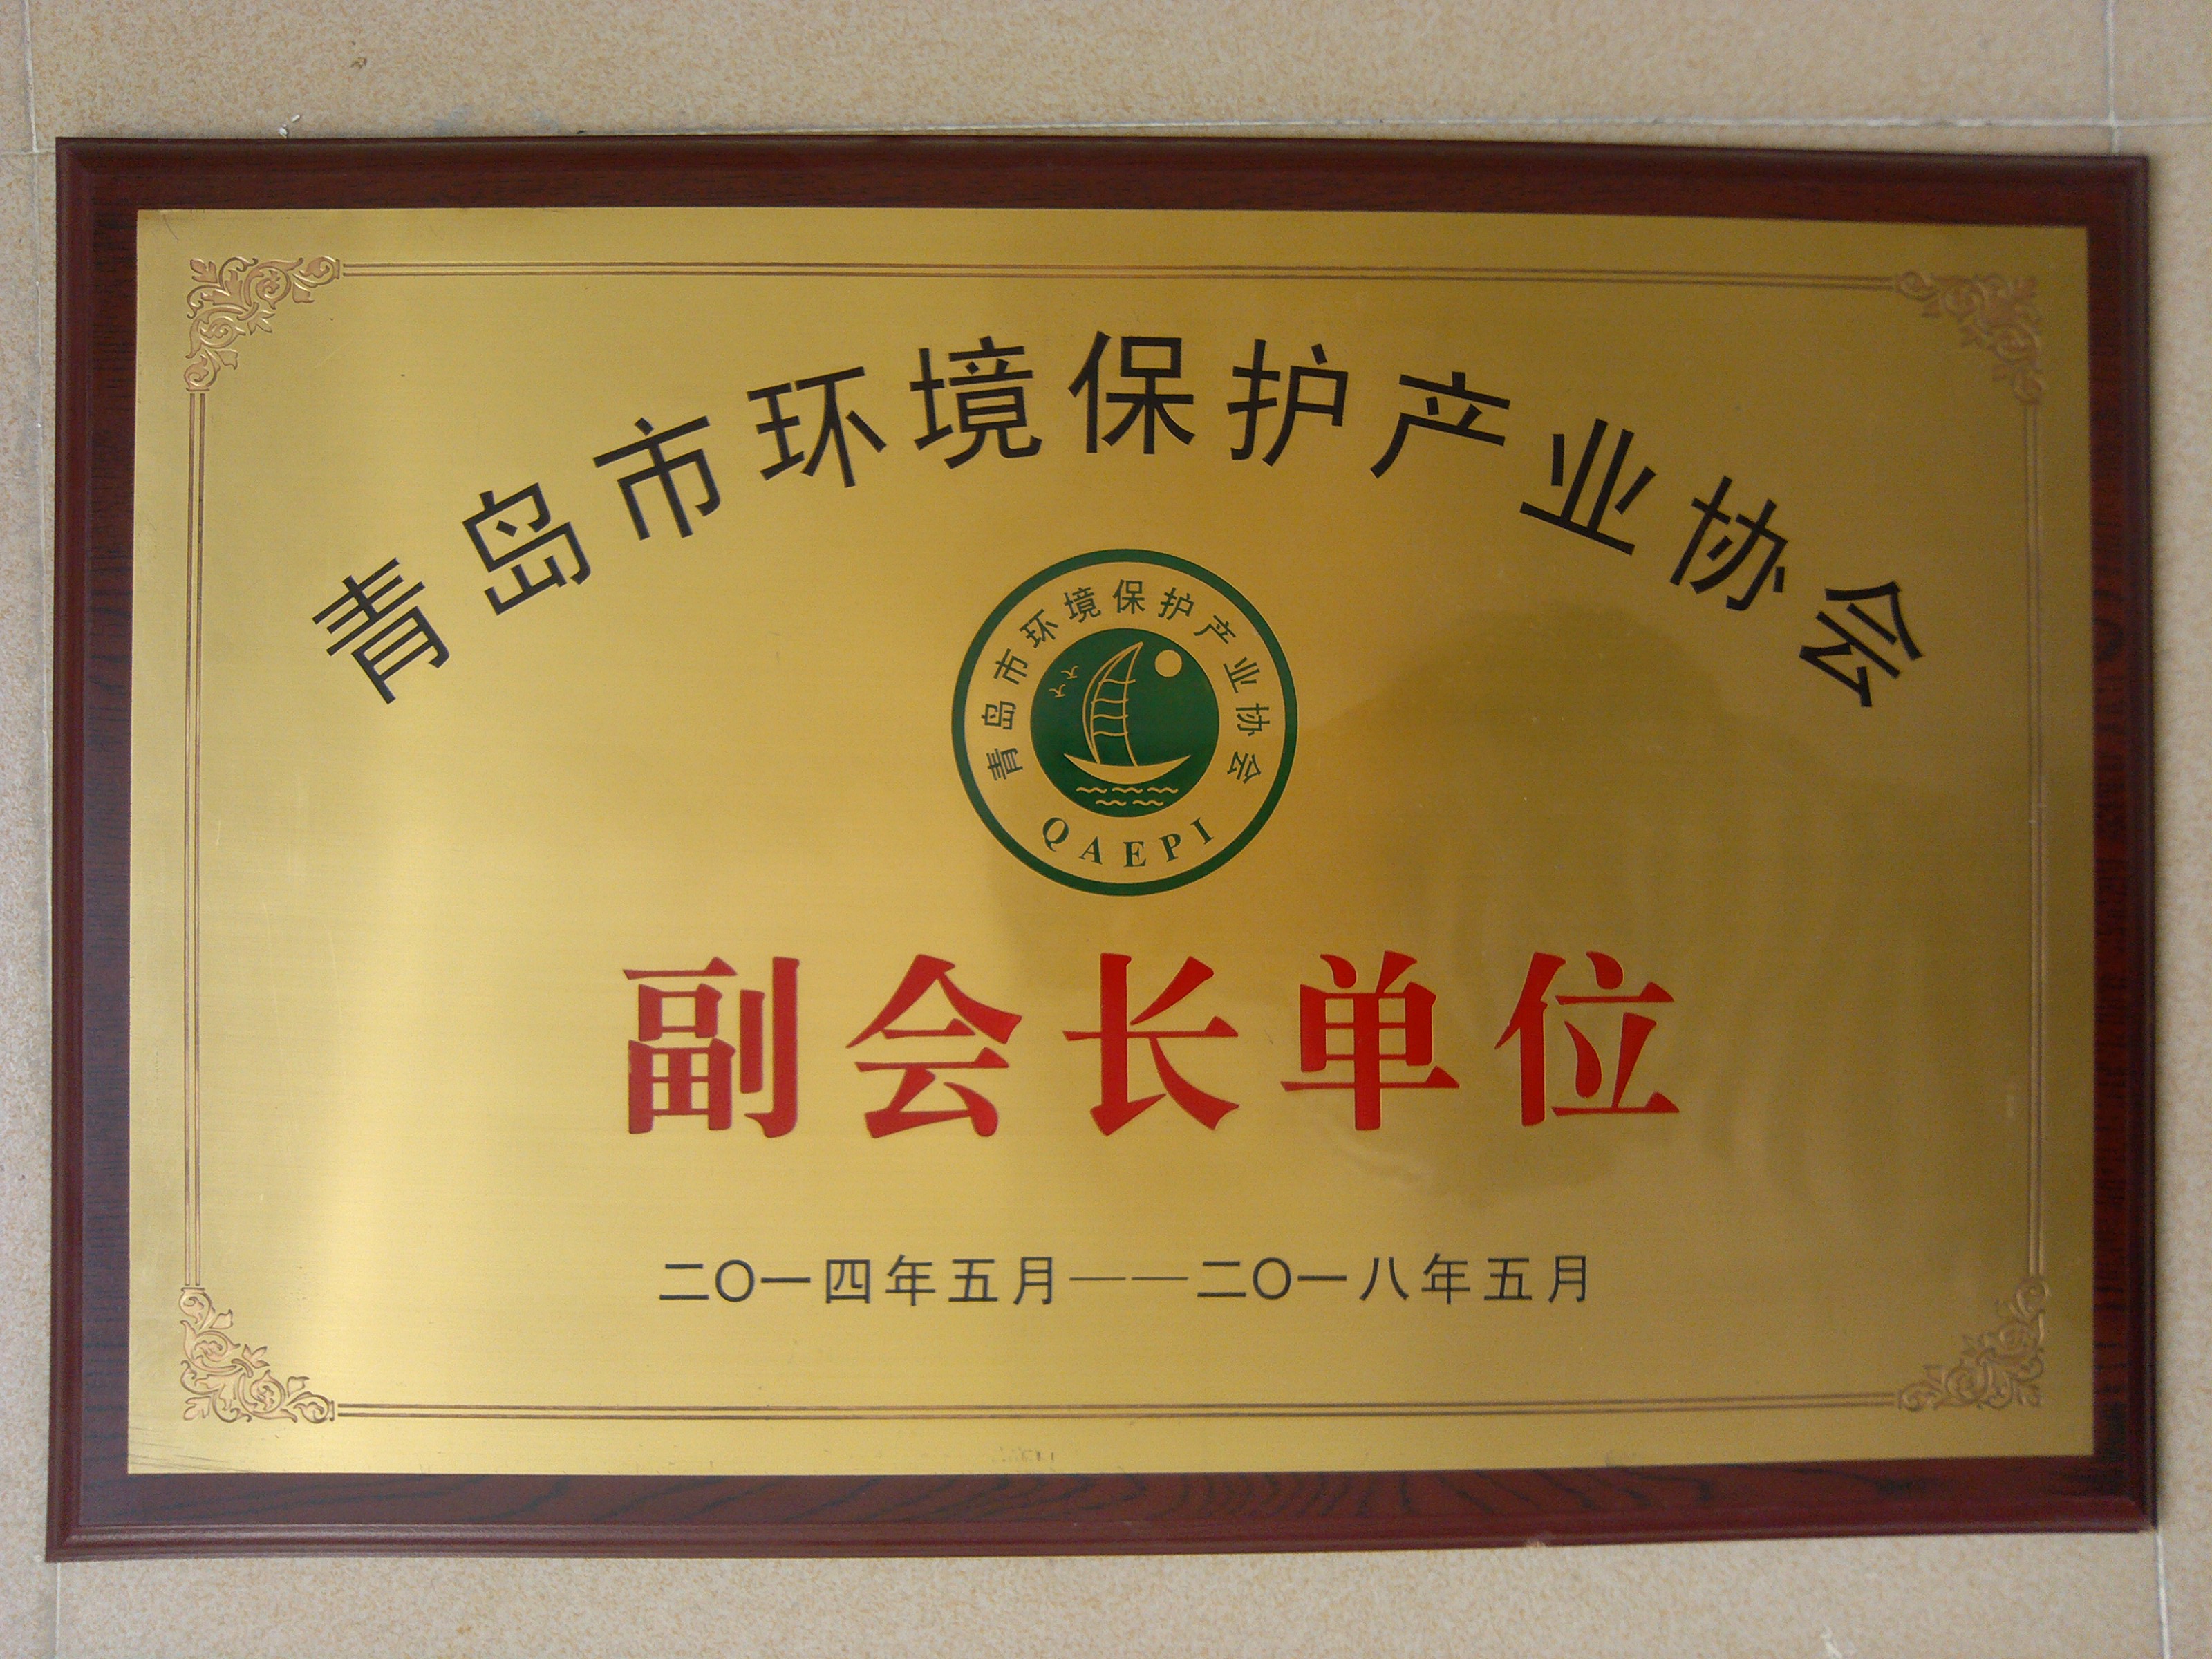 2014年05月獲得青島市環境保護產業協會副會長單位